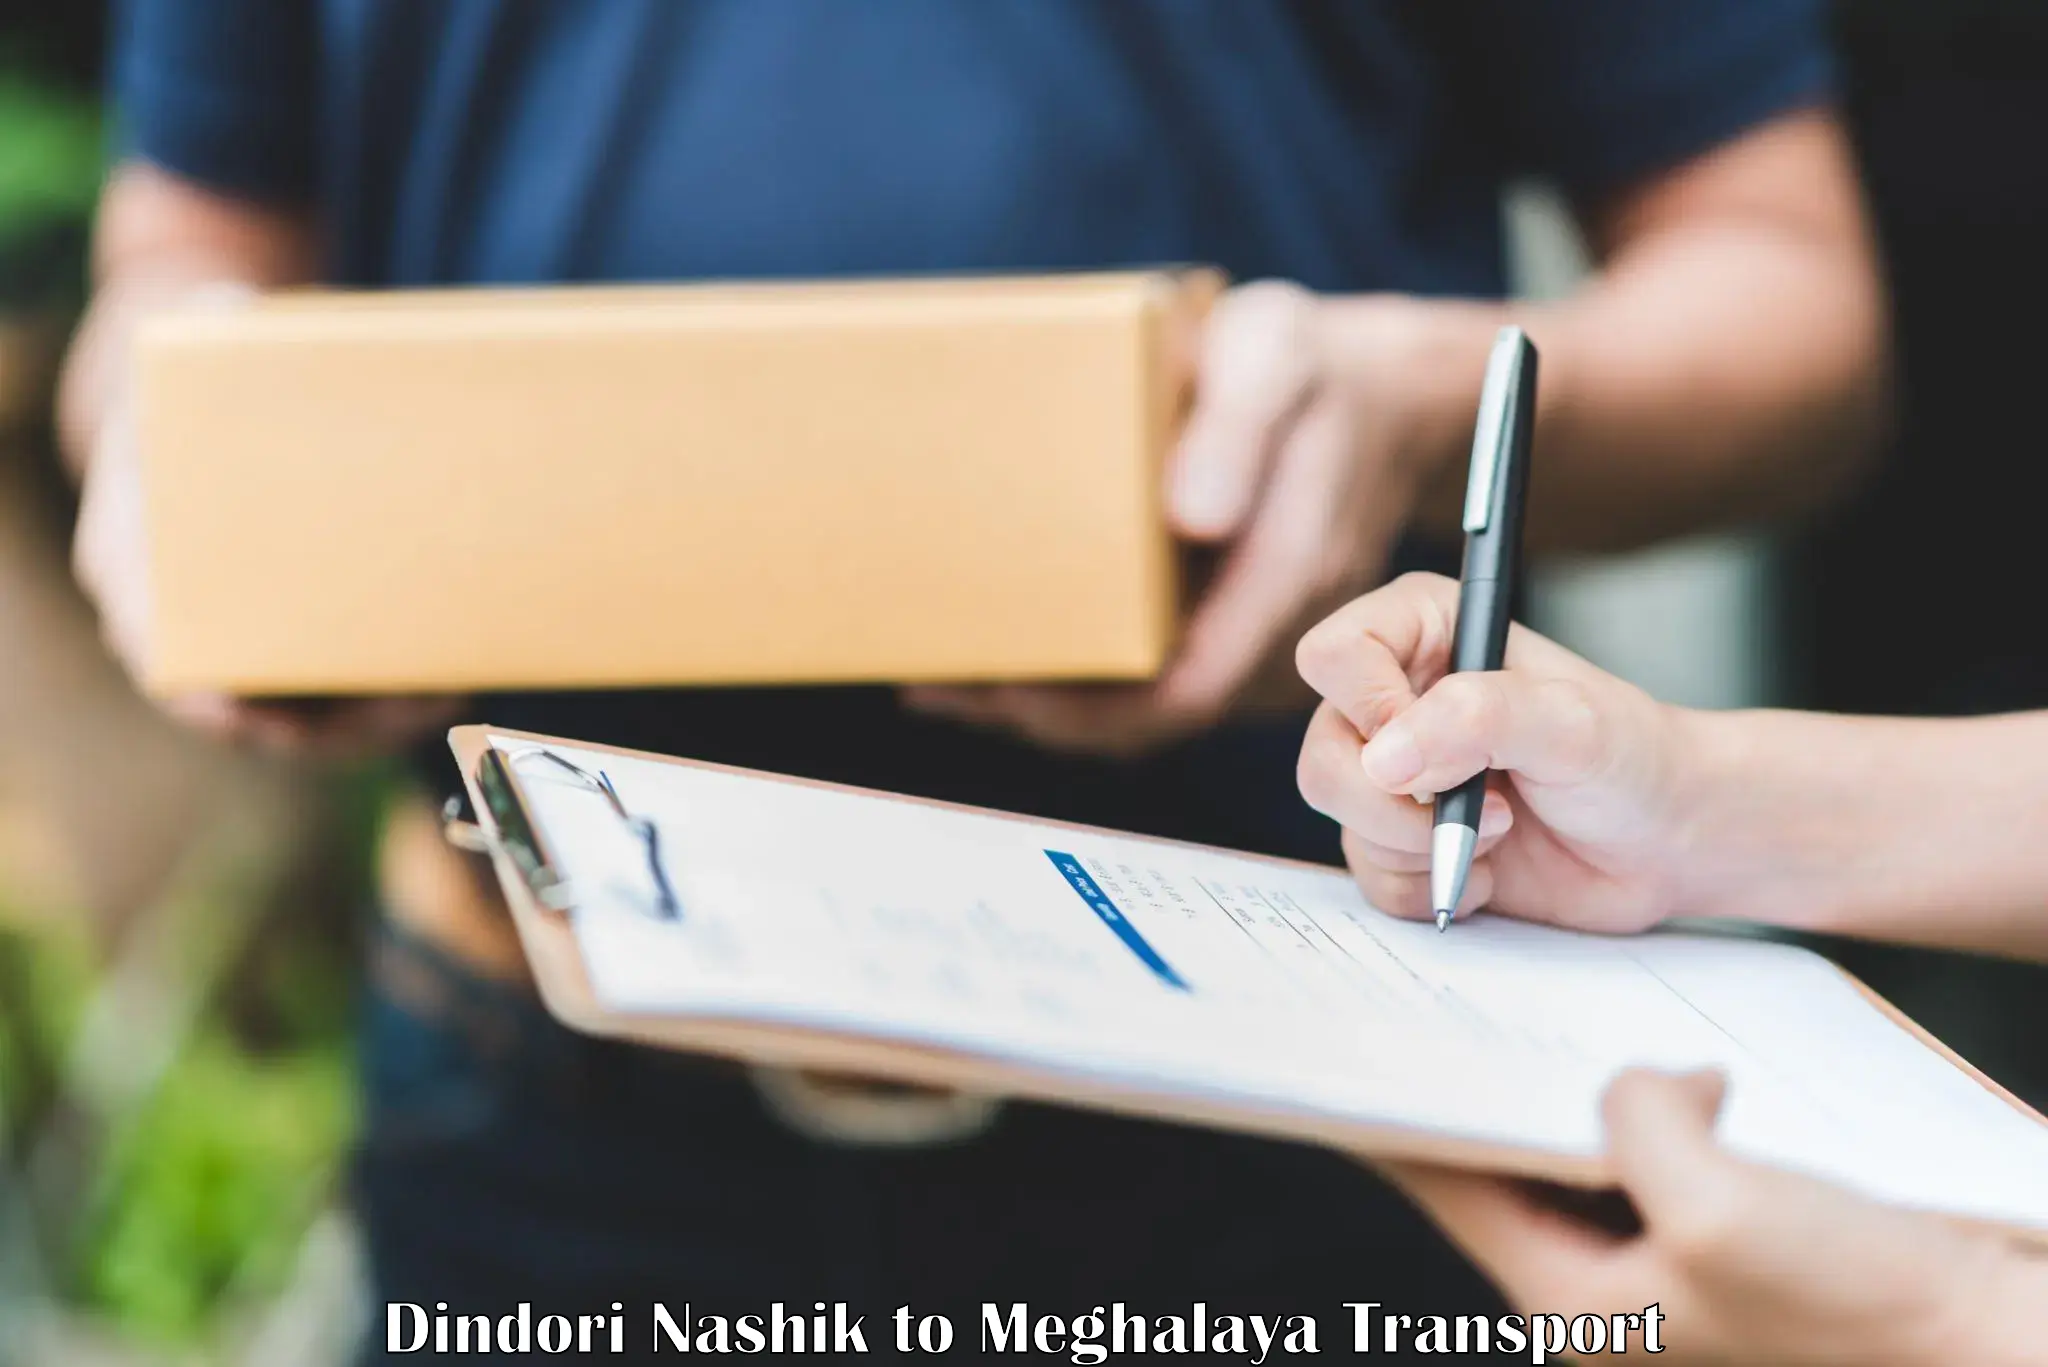 Two wheeler parcel service Dindori Nashik to Meghalaya